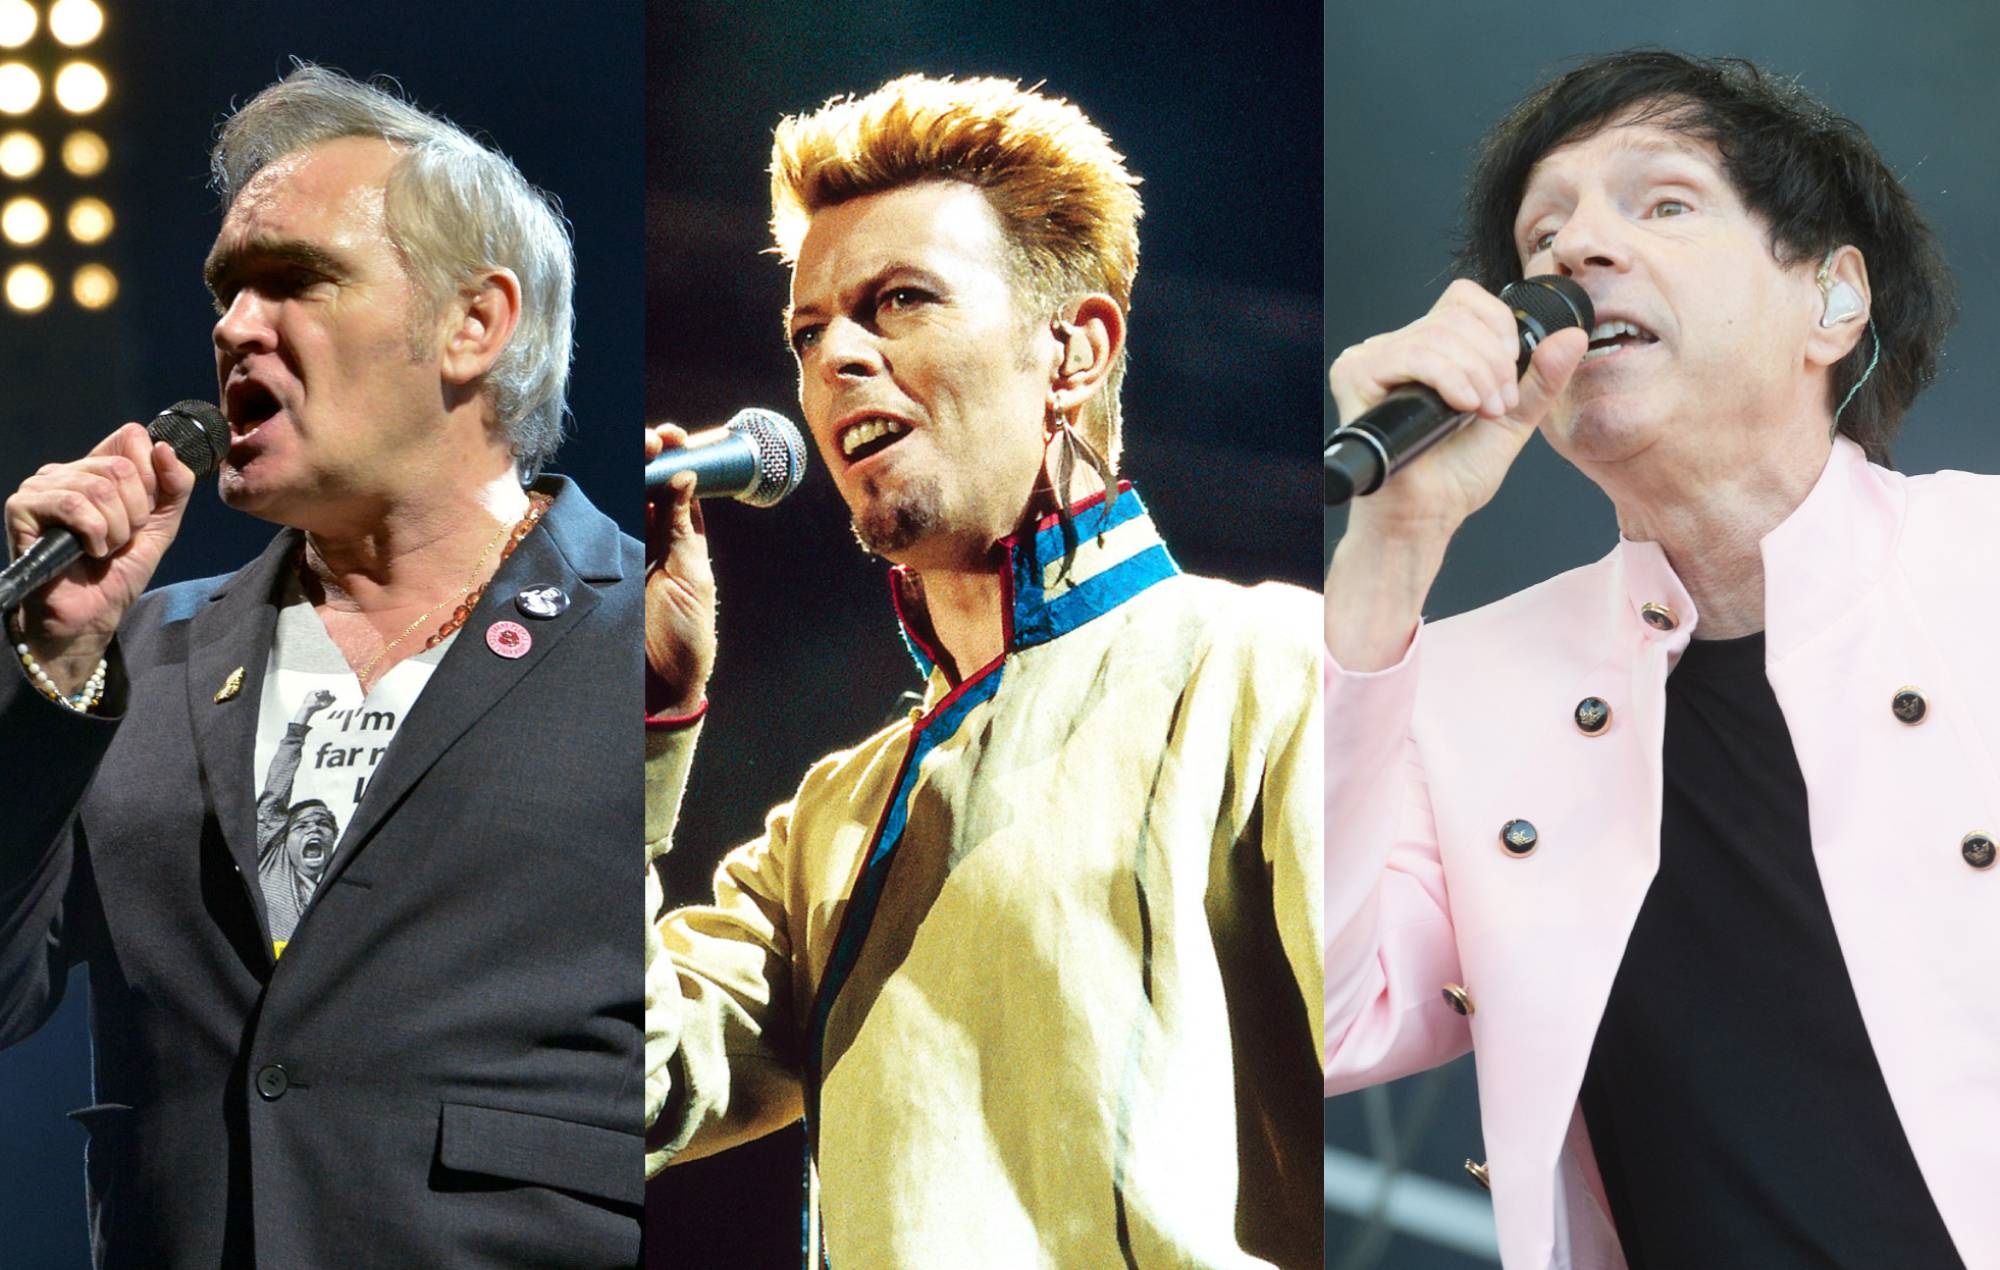 Morrissey devuelve el golpe a Sparks y recuerda su amistad con David Bowie